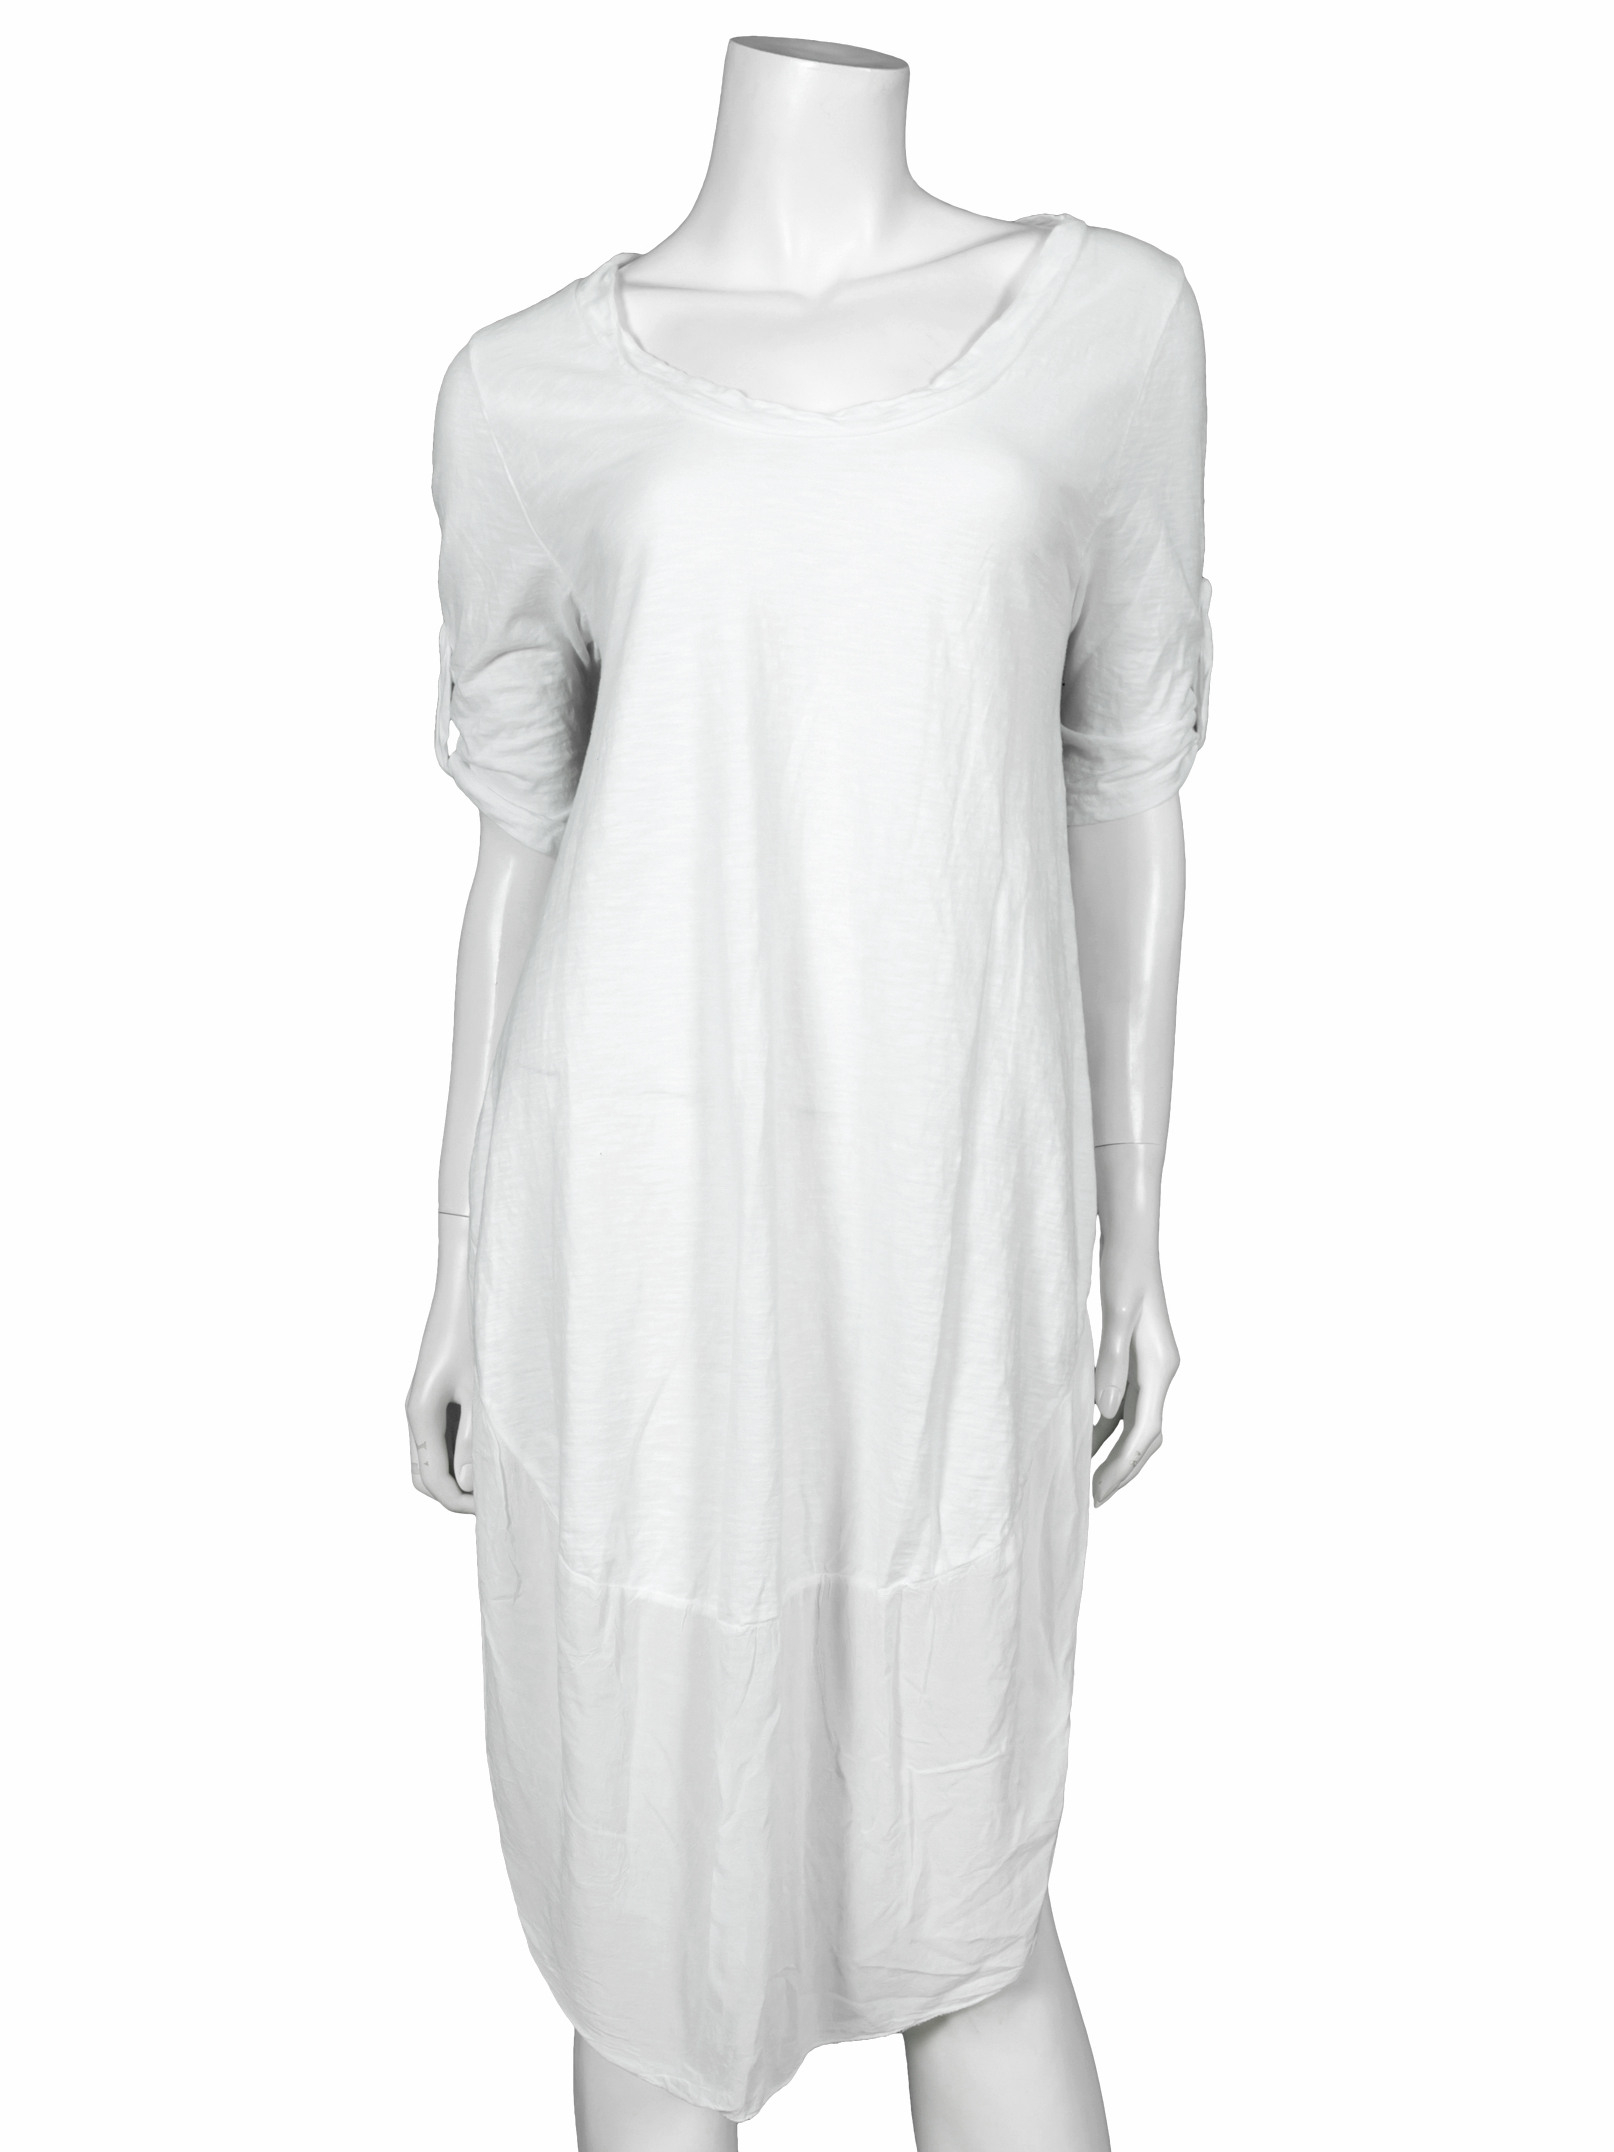 Kleid Baumwolle Weiss Bei Meinkleidchen Kaufen